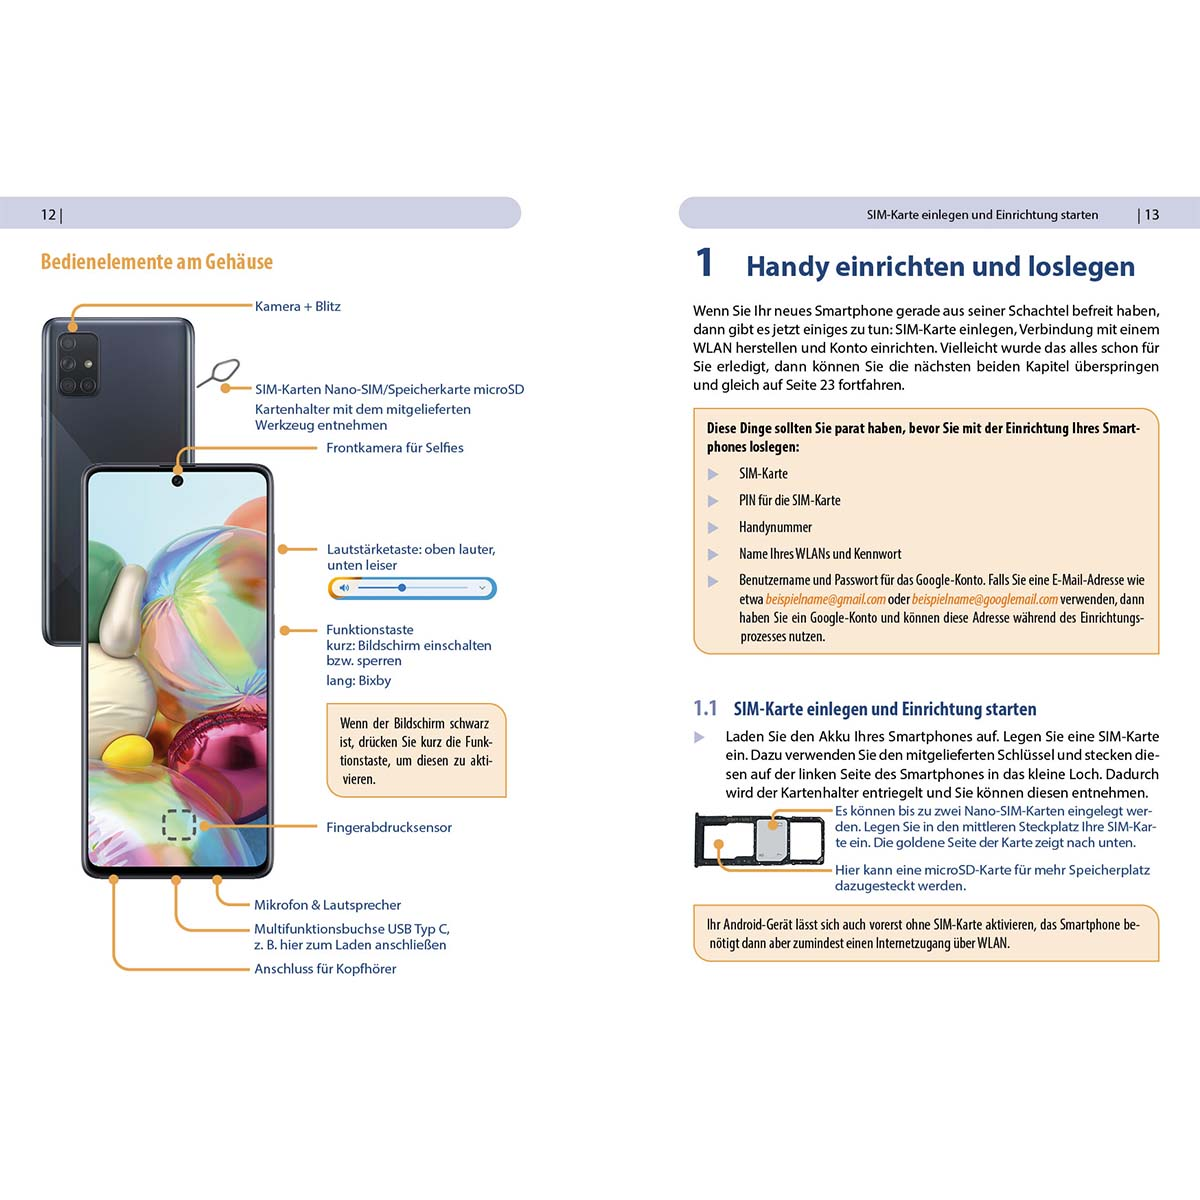 Samsung Vorkenntnisse Für Einsteiger ohne A71 - Galaxy